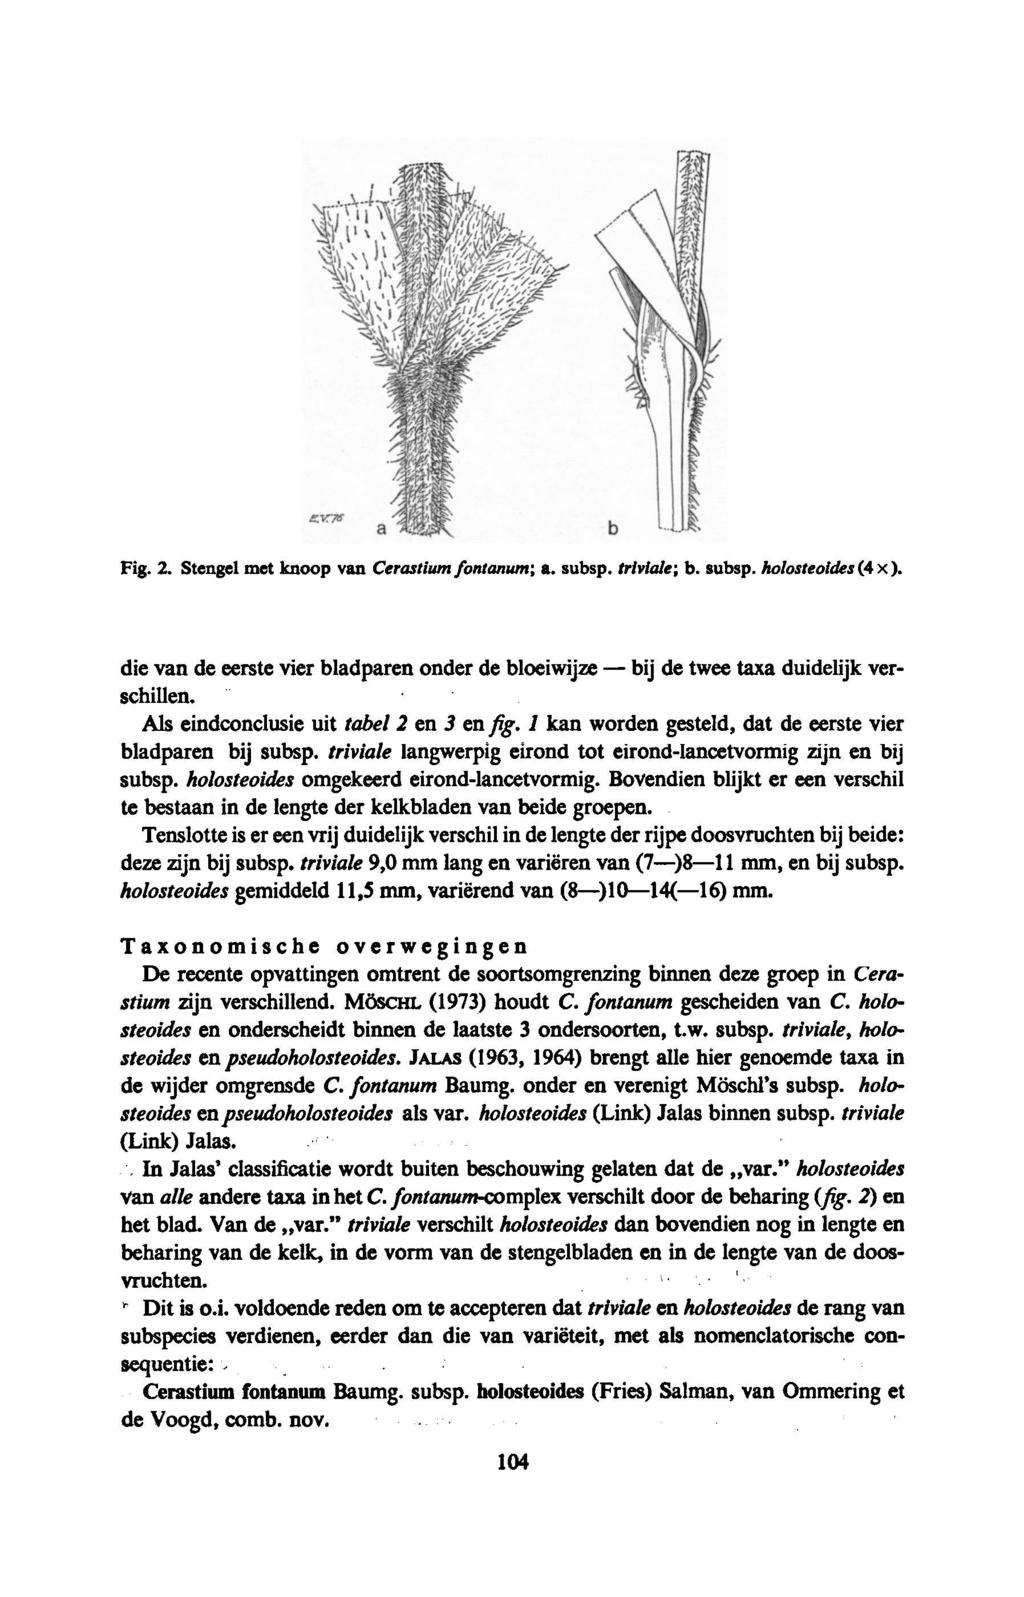 bij Fig. 2. Stengel met knoop van Cerastium fontanum; a. subsp. triviale; b. subsp. holosteoides(4 x). die van de eerste vier bladparen onder de bloeiwijze de twee taxa duidelijk verschillen.